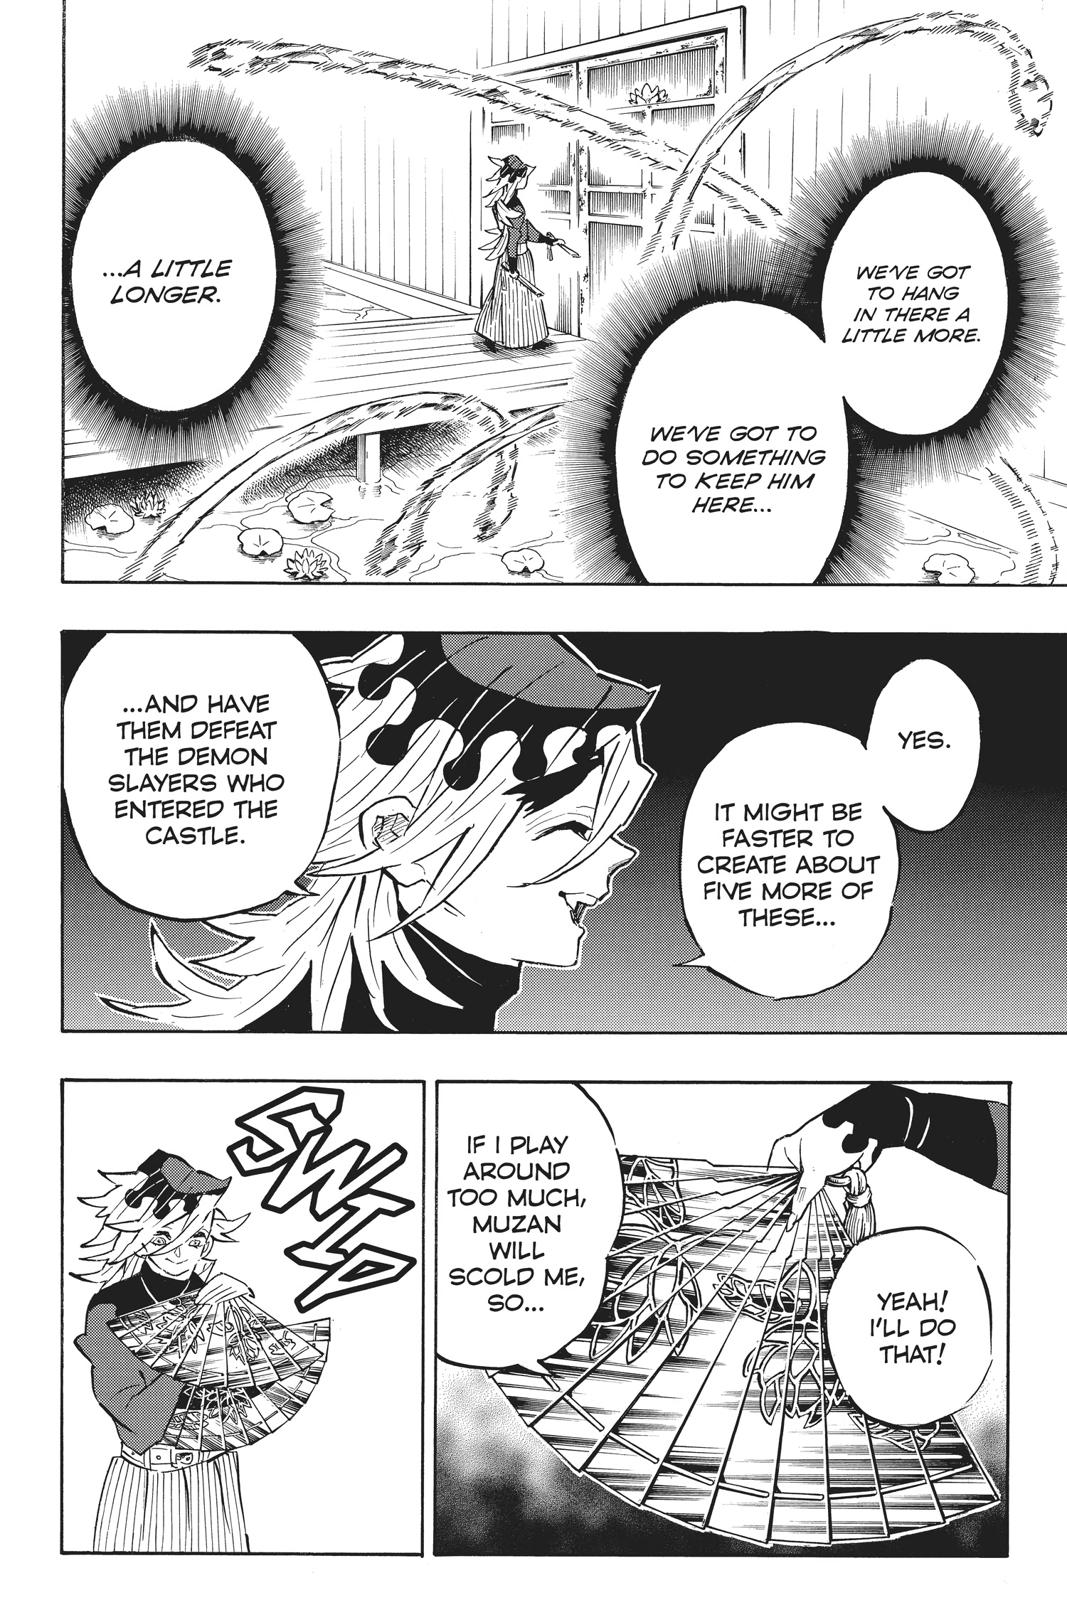 Demon Slayer Manga Manga Chapter - 161 - image 15